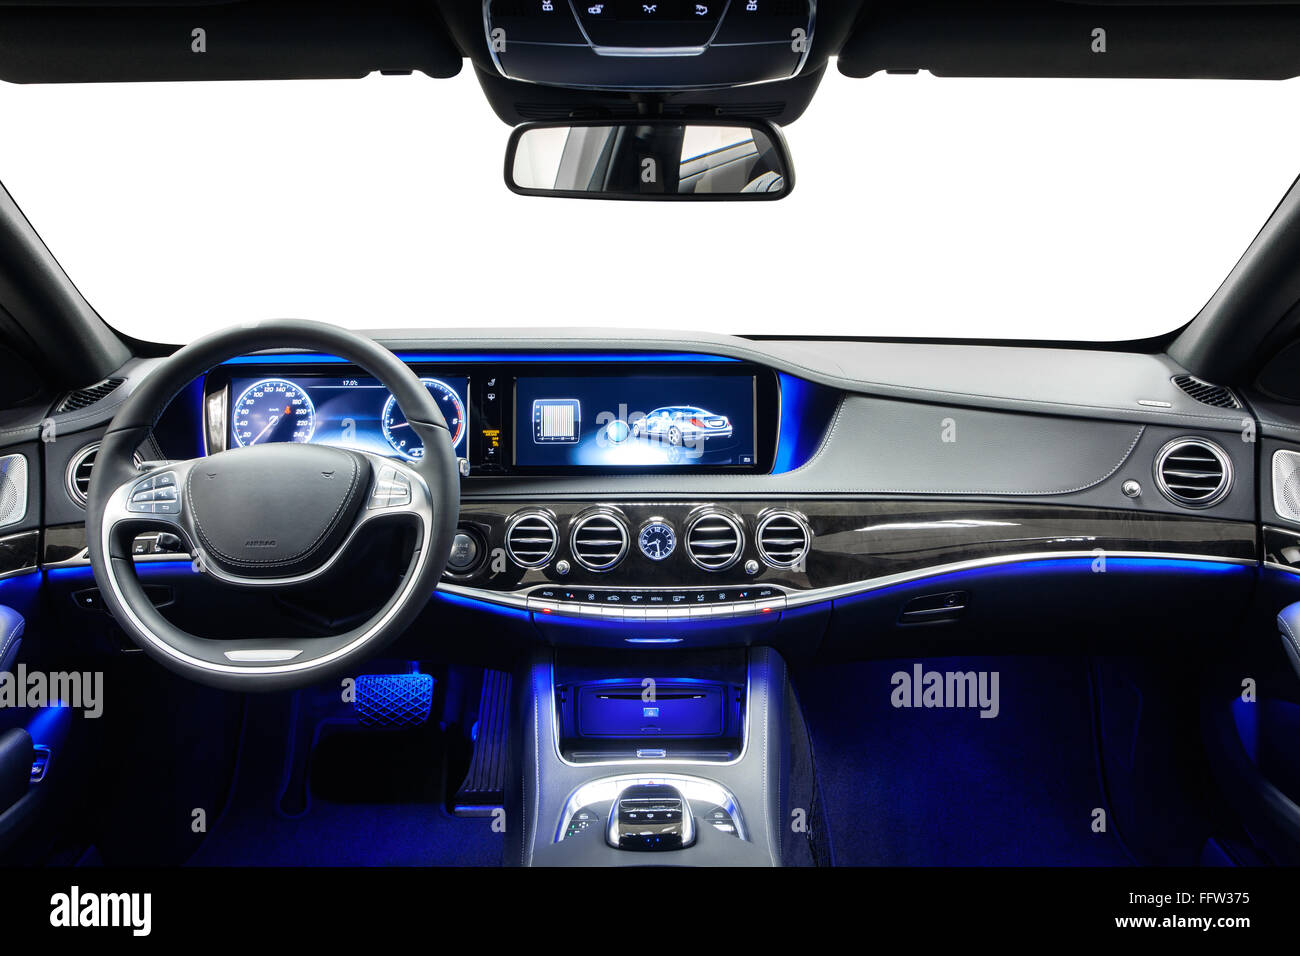 https://c8.alamy.com/compde/ffw375/auto-innenraum-luxus-dashboard-lenkrad-holz-dekoration-blaue-umgebungslicht-reinigung-und-auto-service-details-ffw375.jpg